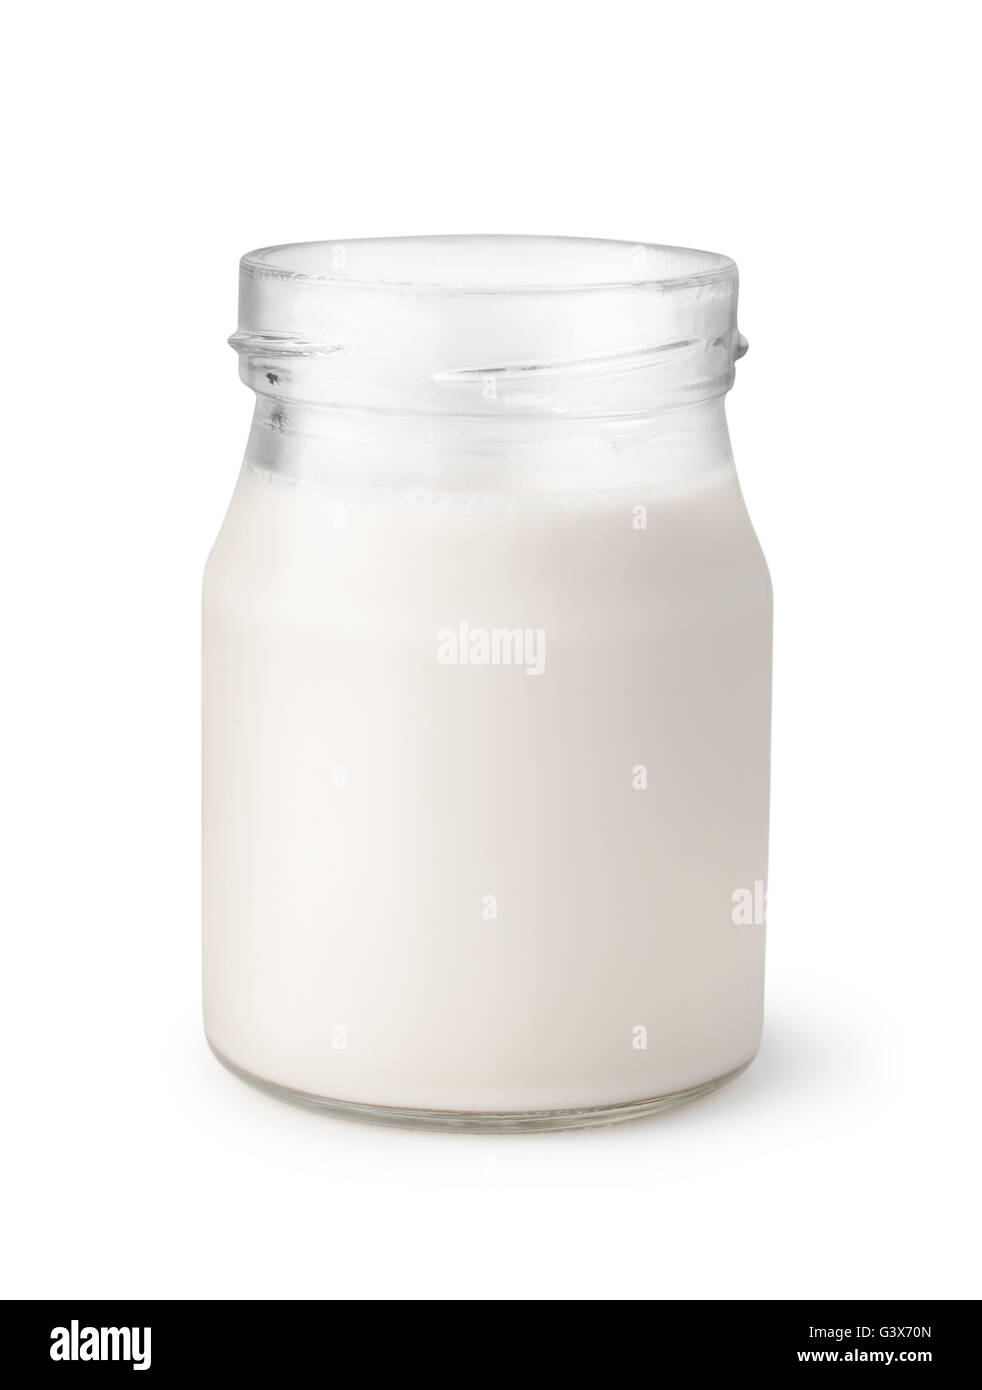 The Fruit yogurt bottle isolated on white backgroung Stock Photo - Alamy